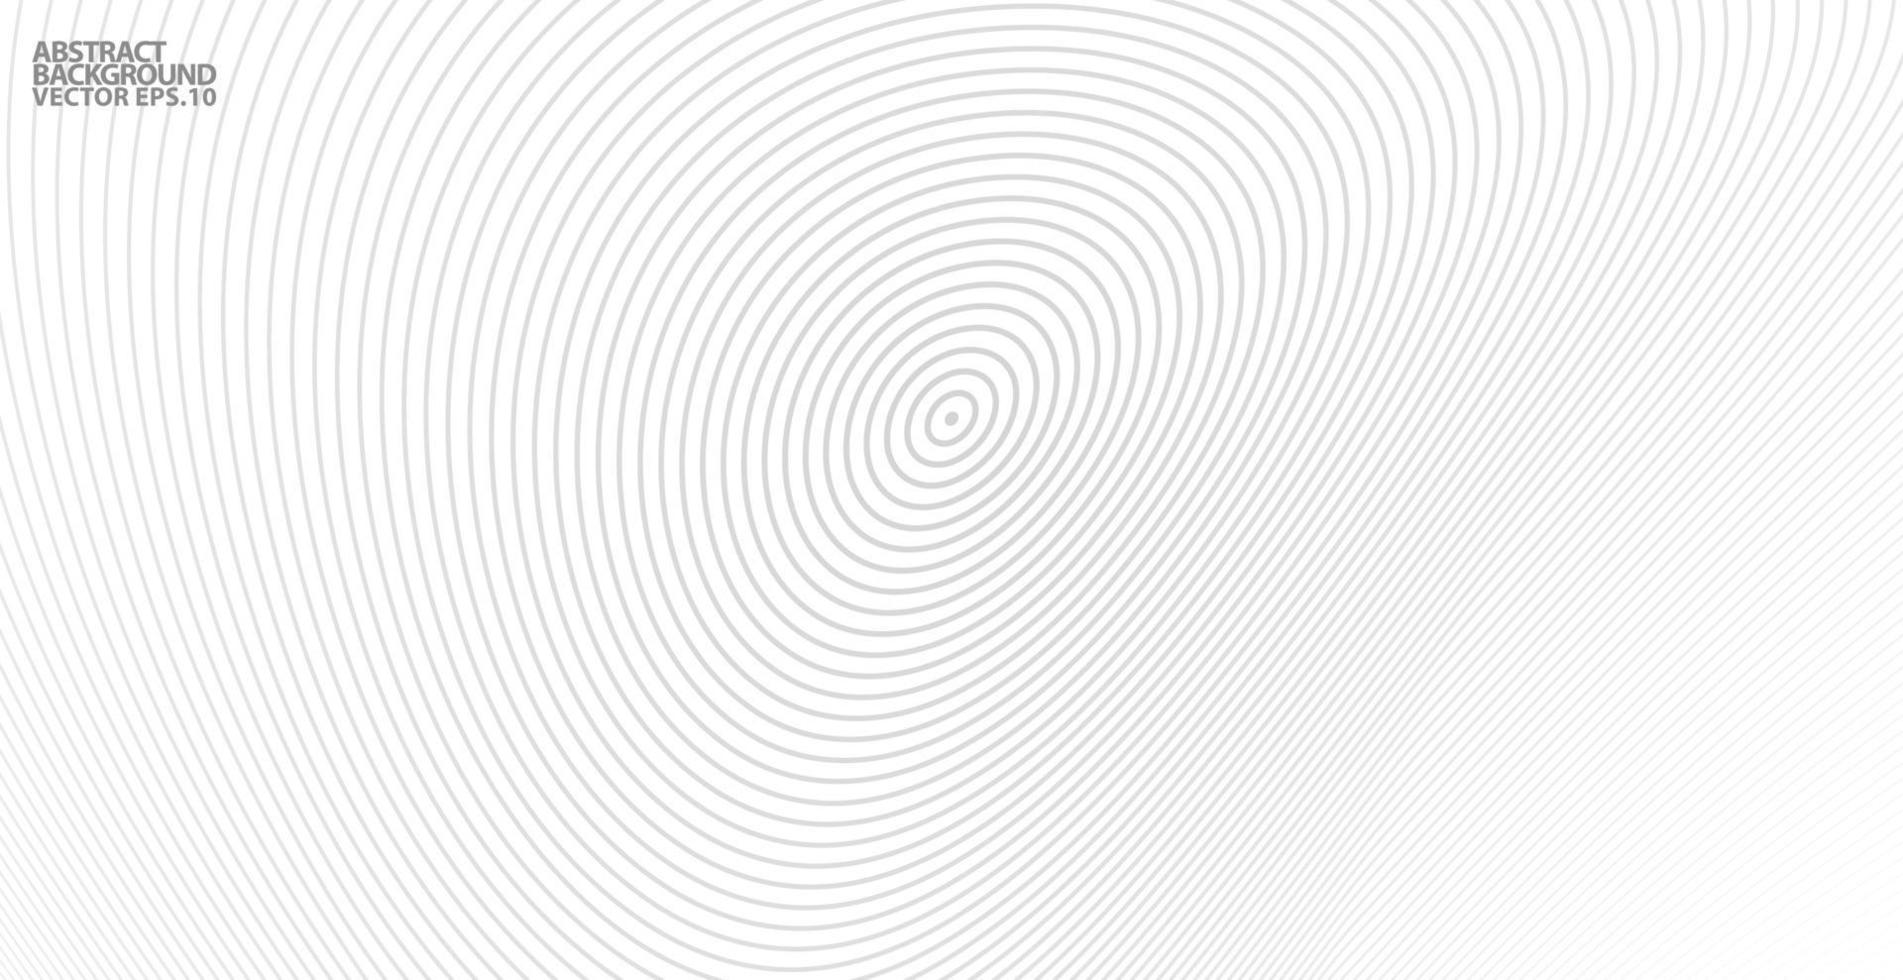 fundo abstrato do círculo. gradiente retro linha padrão onda sonora vetor